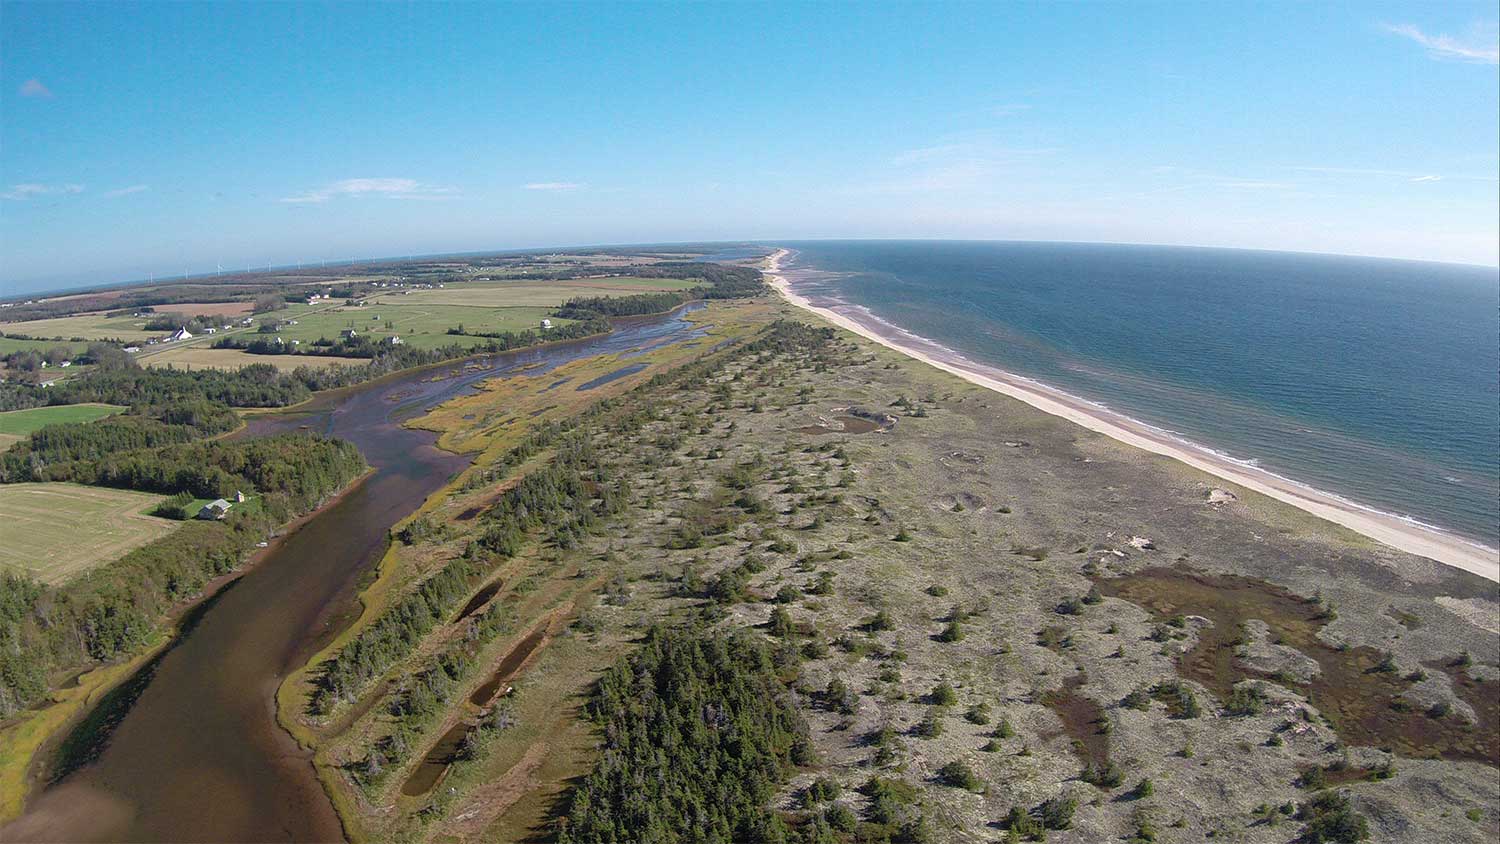 Photo prise par drone du bras nord-est de la ZPM de Basin Head. ©Perry Williams, Virtual Studio Inc. 2014.